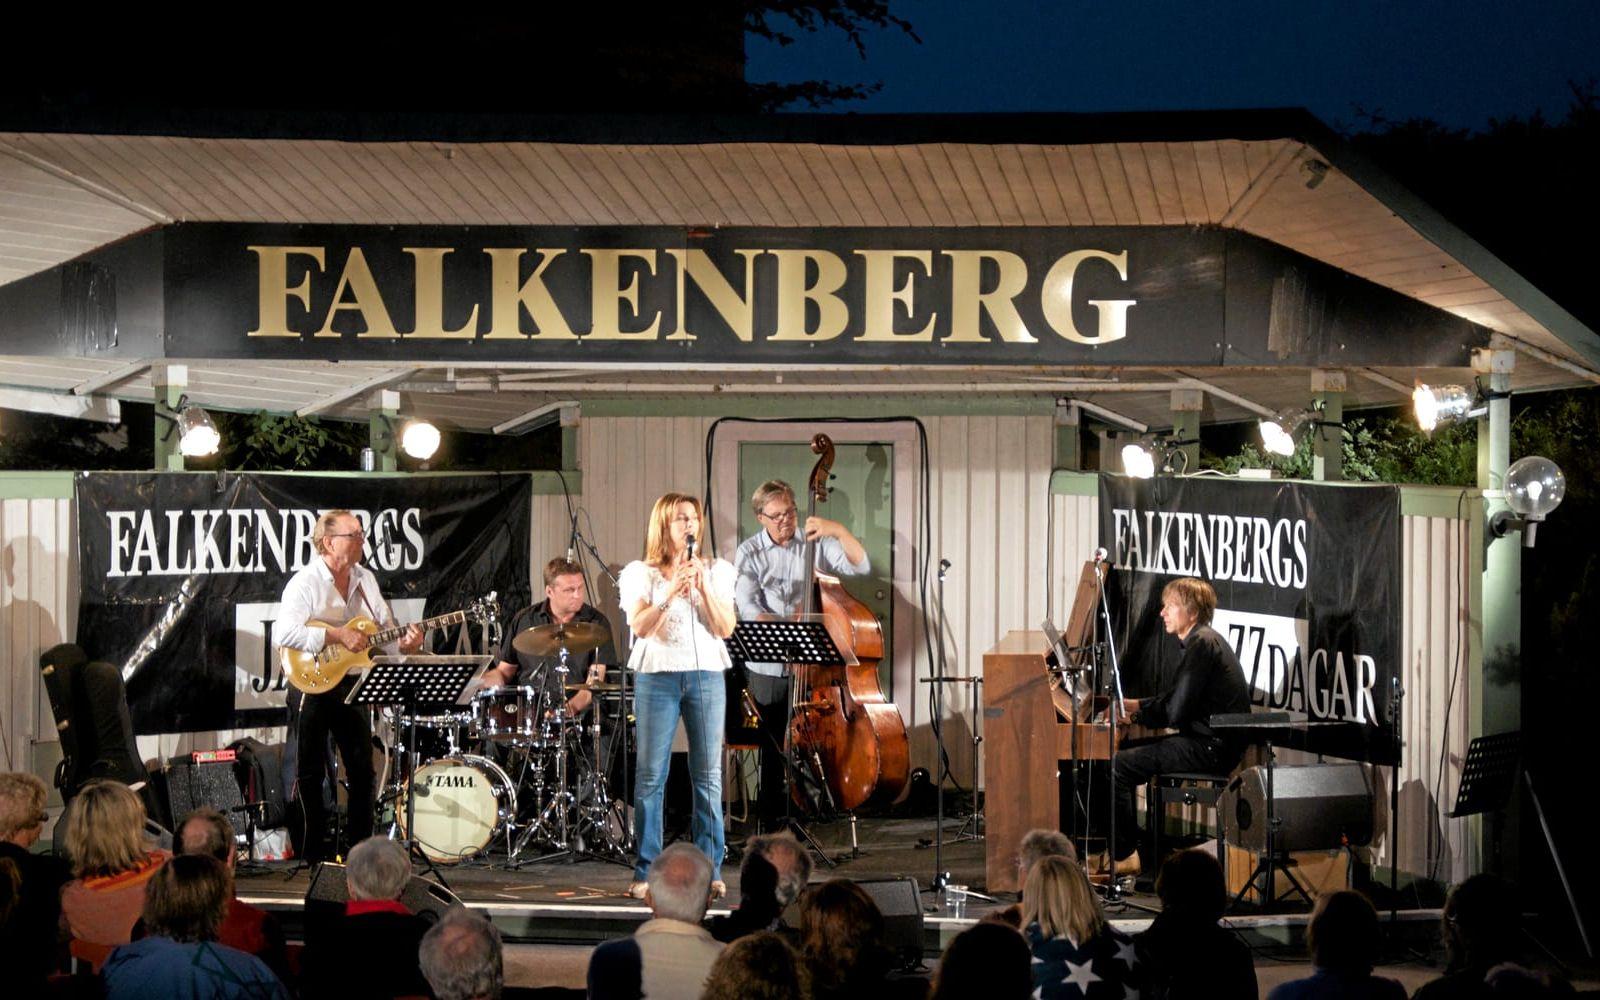 Jazzigt. Ett av de större evenemangen som sker under veckan är Falkenbergs jazzdagar, som pågår torsdag-lördag. Här deltar många olika artister och band. Bild: Martin Erlandsson